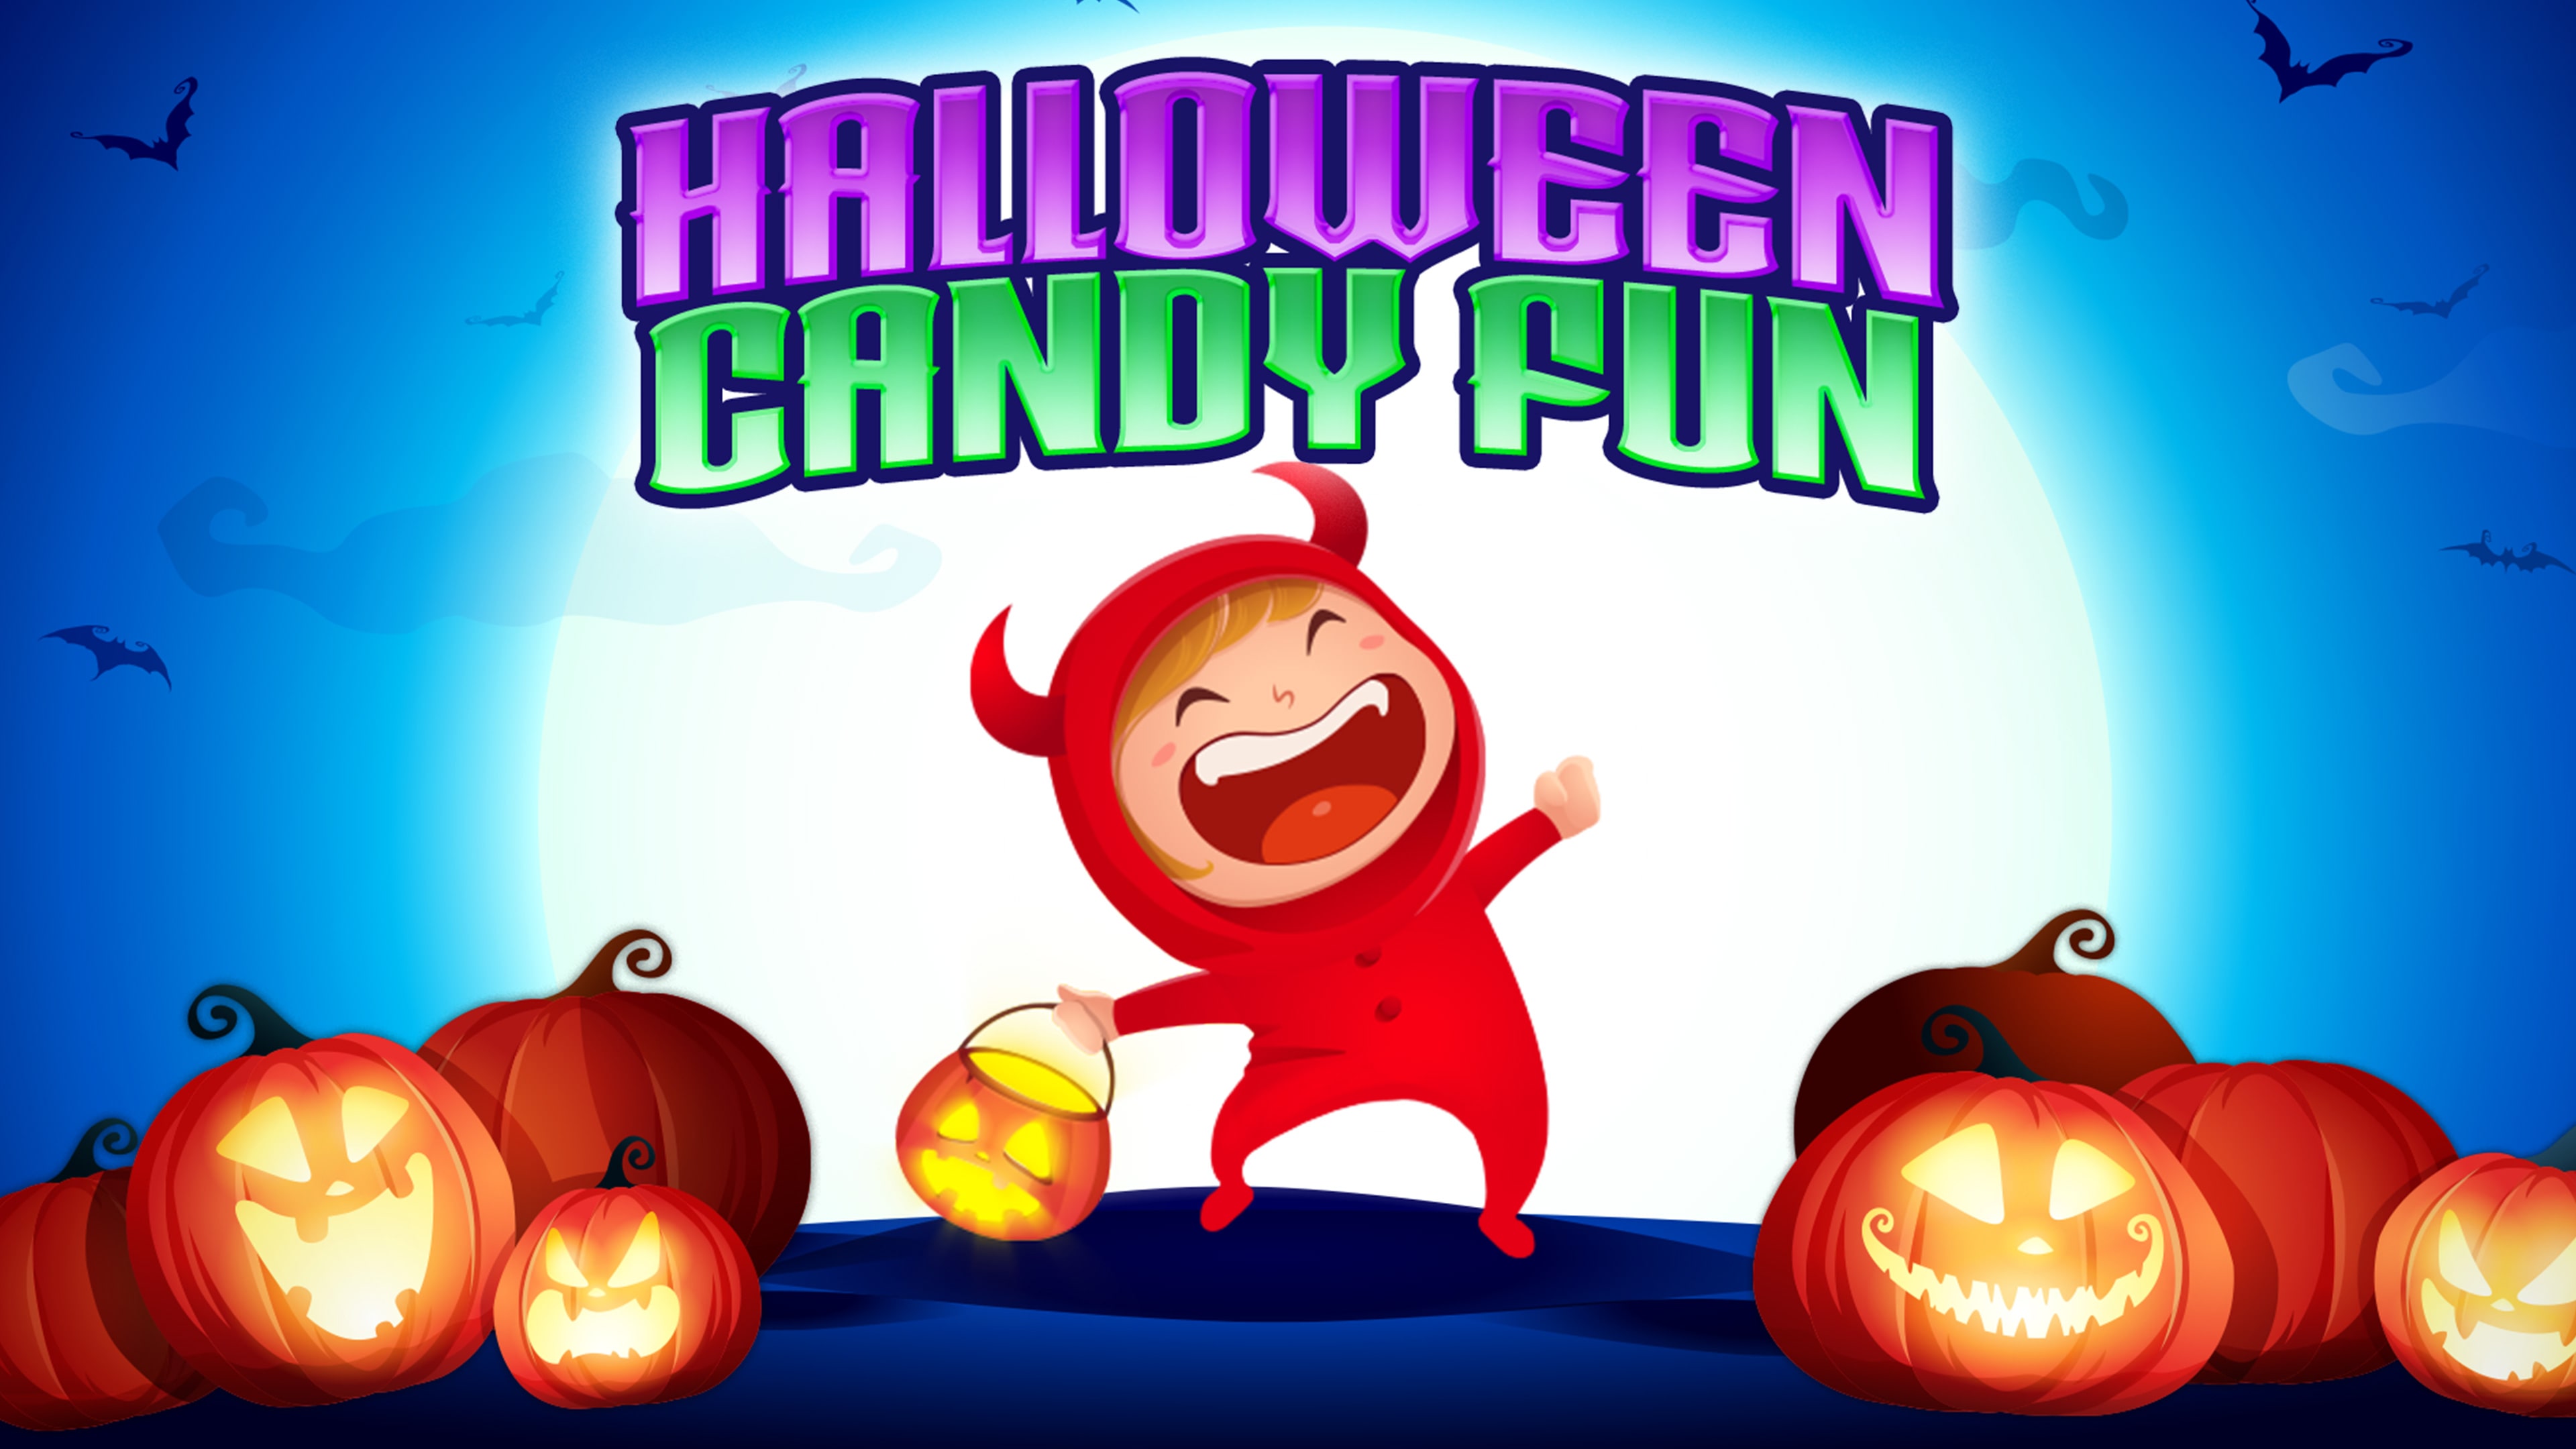 Halloween Candy Fun